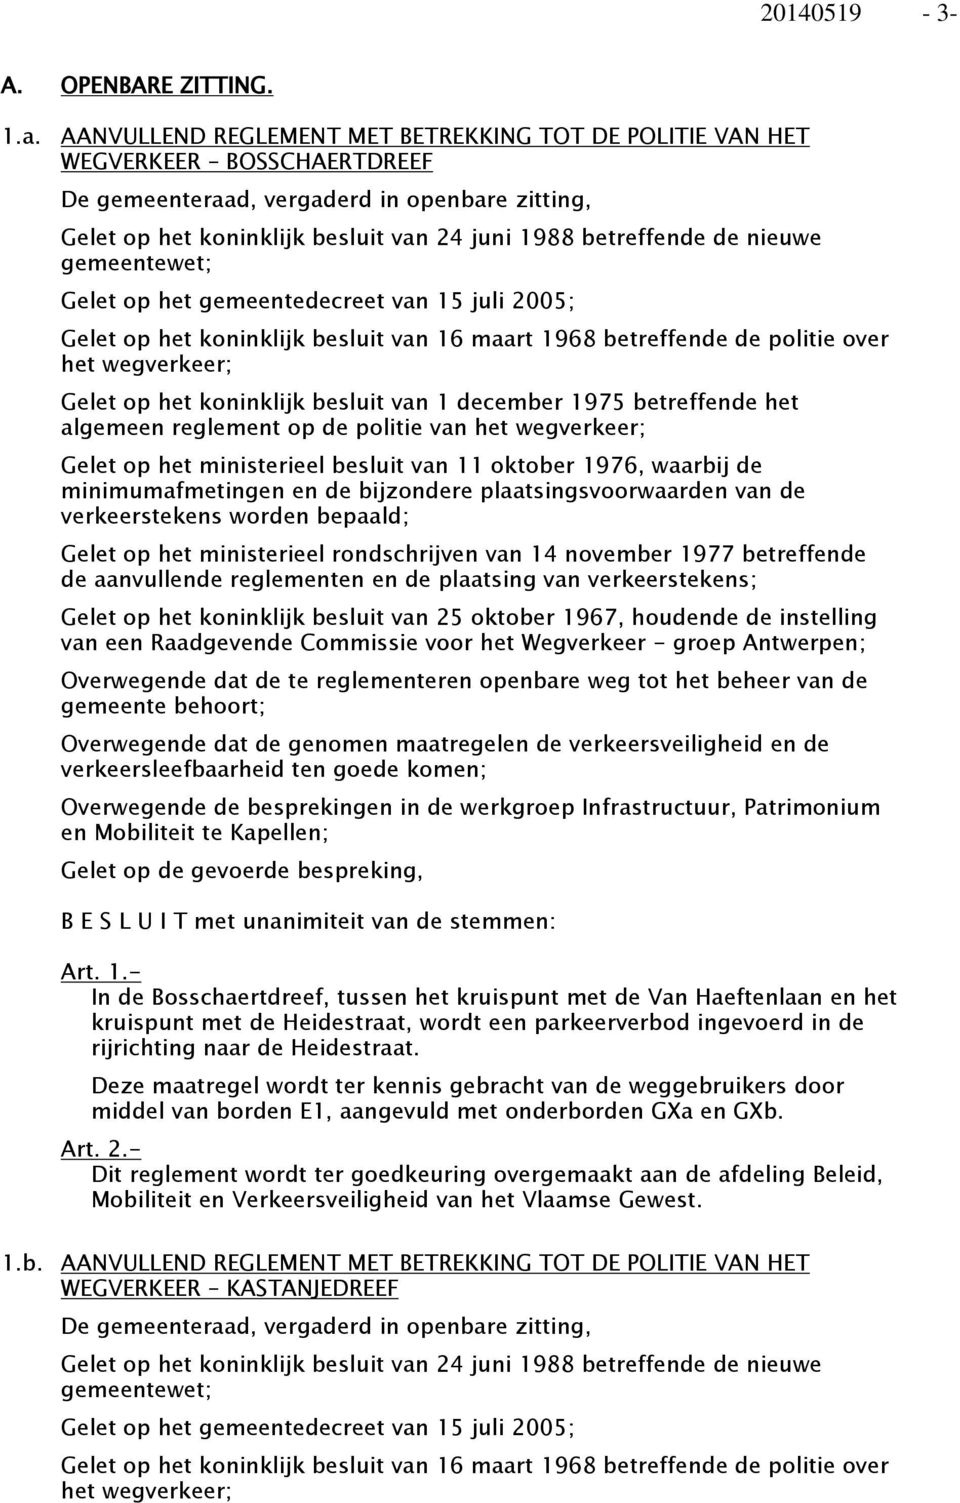 nieuwe gemeentewet; Gelet op het gemeentedecreet van 15 juli 2005; Gelet op het koninklijk besluit van 16 maart 1968 betreffende de politie over het wegverkeer; Gelet op het koninklijk besluit van 1